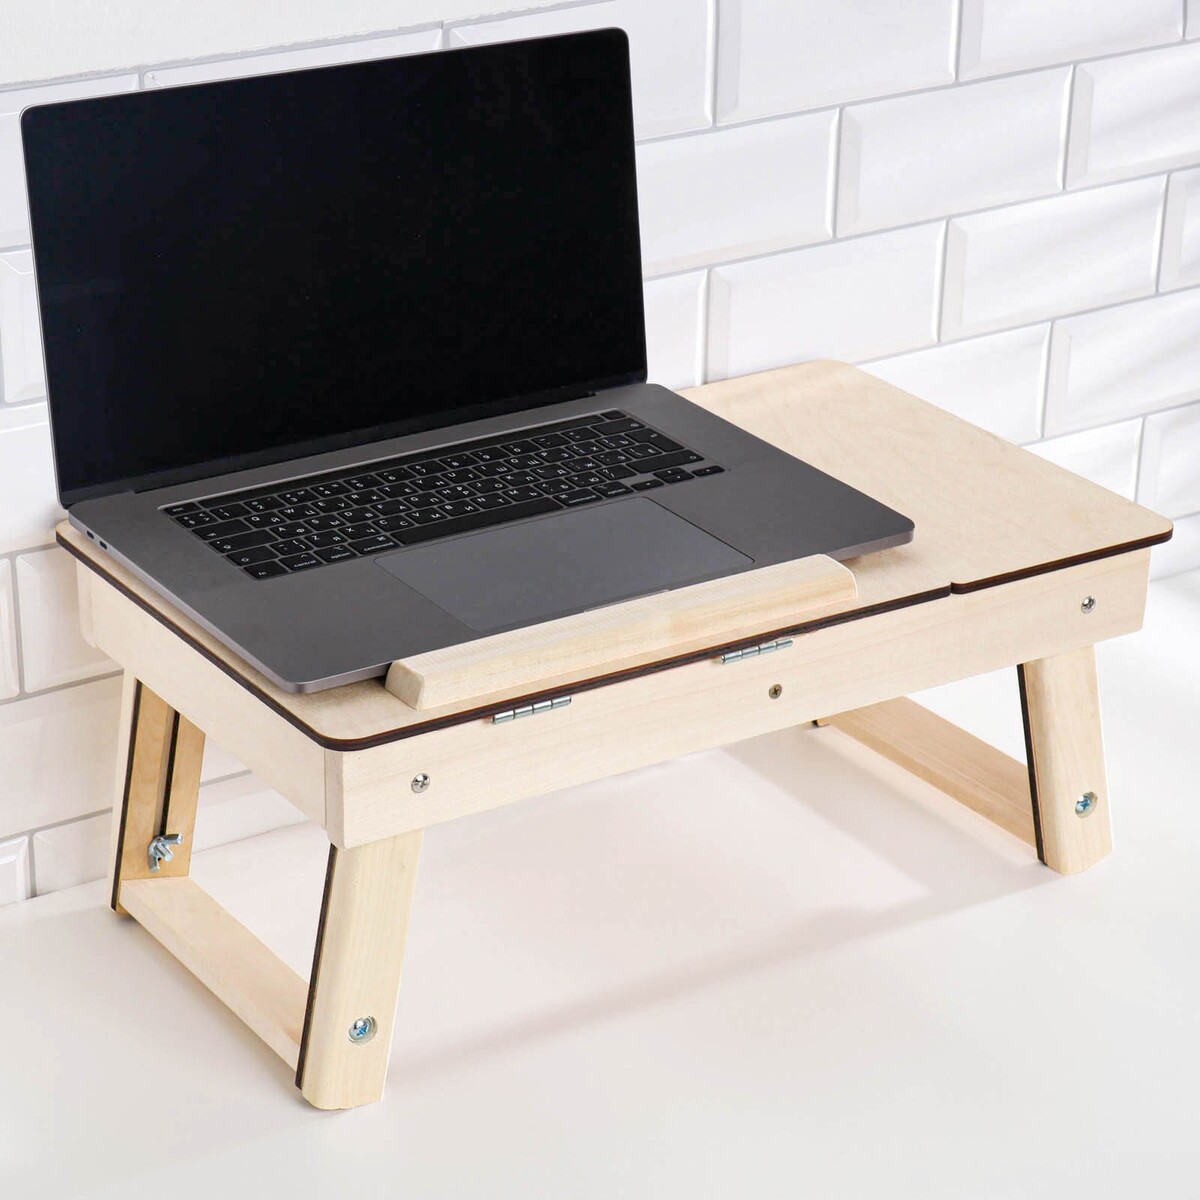 Столик для ноутбука складной bradex столик универсальный раскладушка